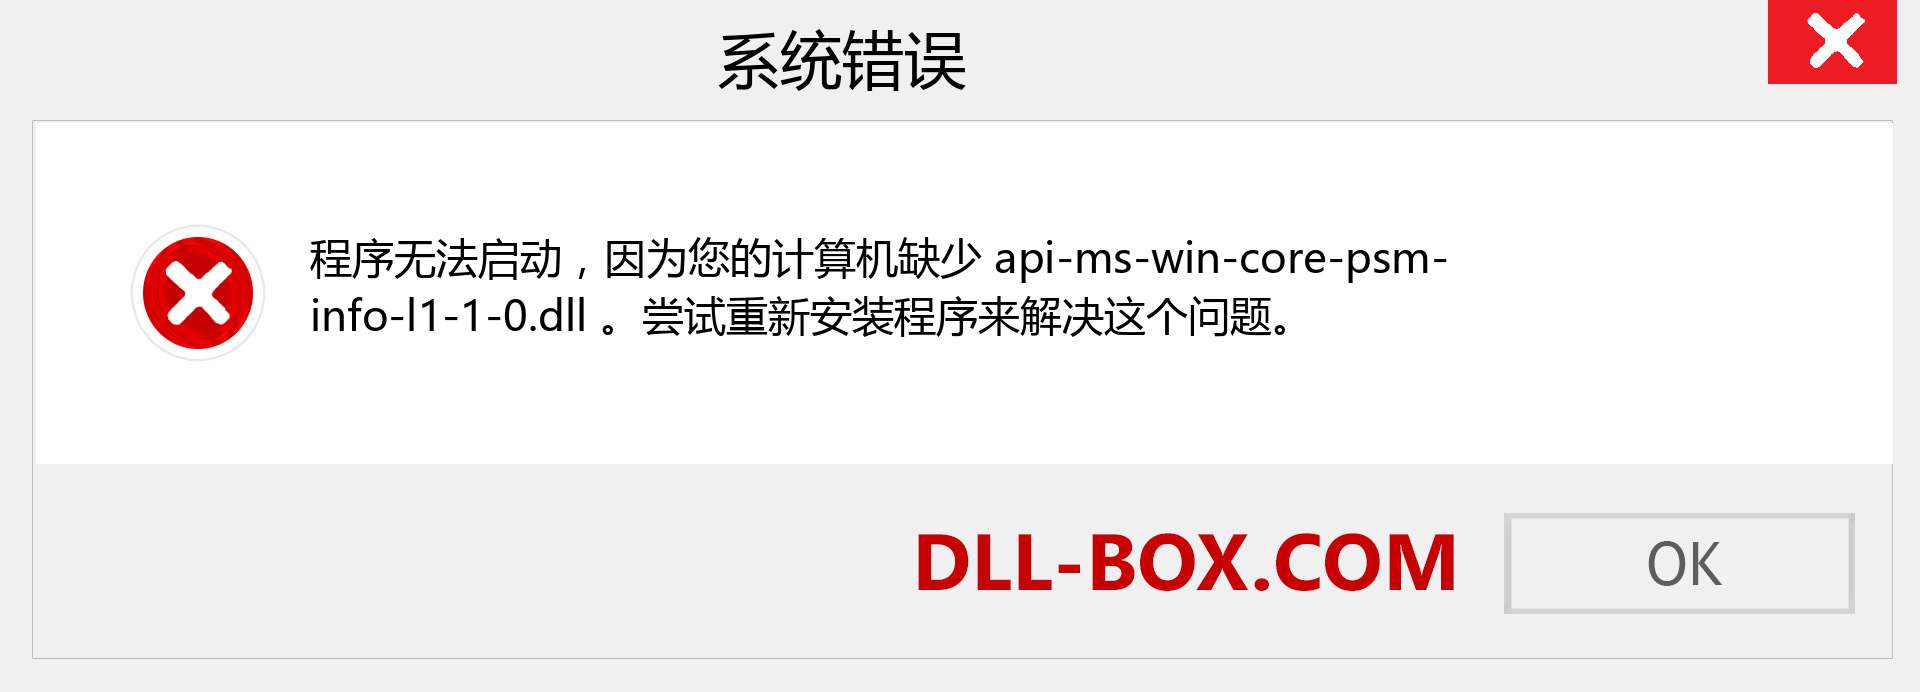 api-ms-win-core-psm-info-l1-1-0.dll 文件丢失？。 适用于 Windows 7、8、10 的下载 - 修复 Windows、照片、图像上的 api-ms-win-core-psm-info-l1-1-0 dll 丢失错误